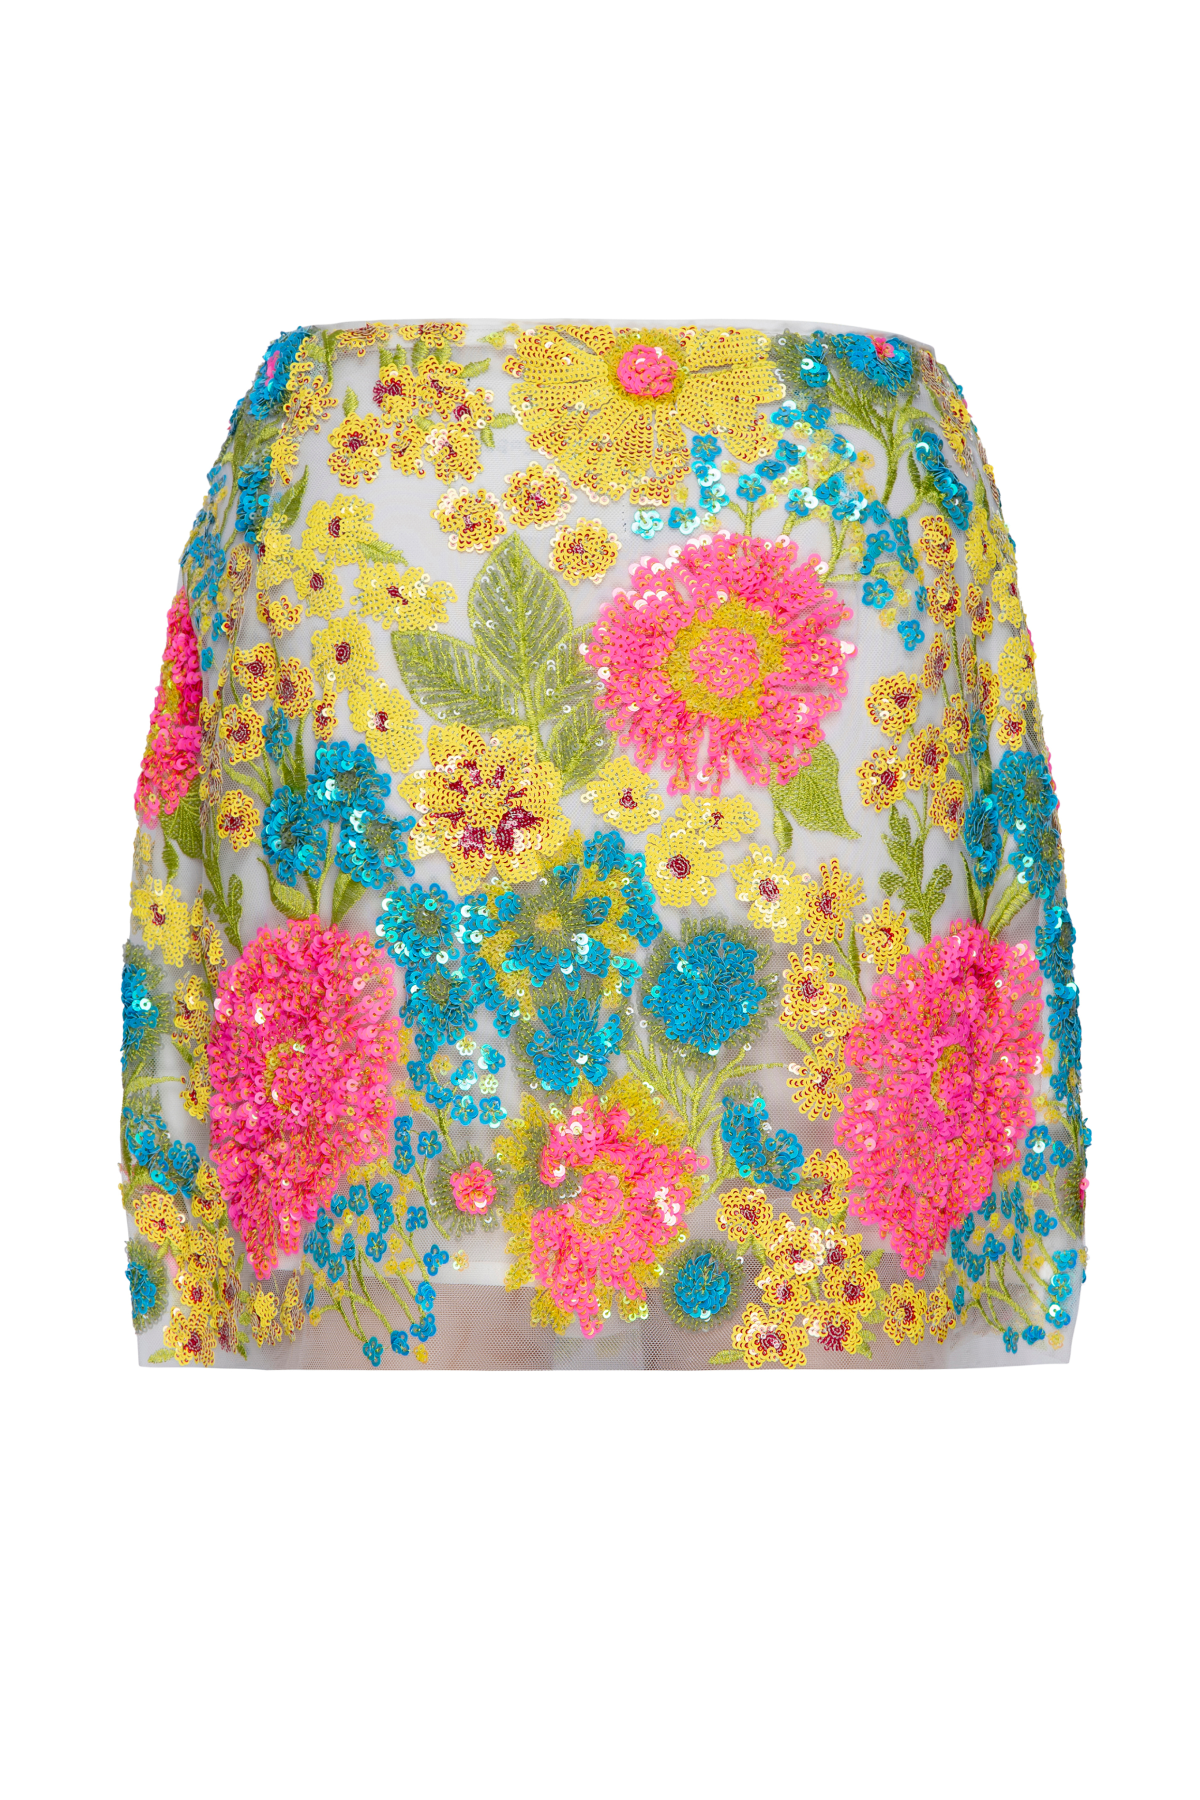 Le Superbe Ojai Flower Mini Skirt